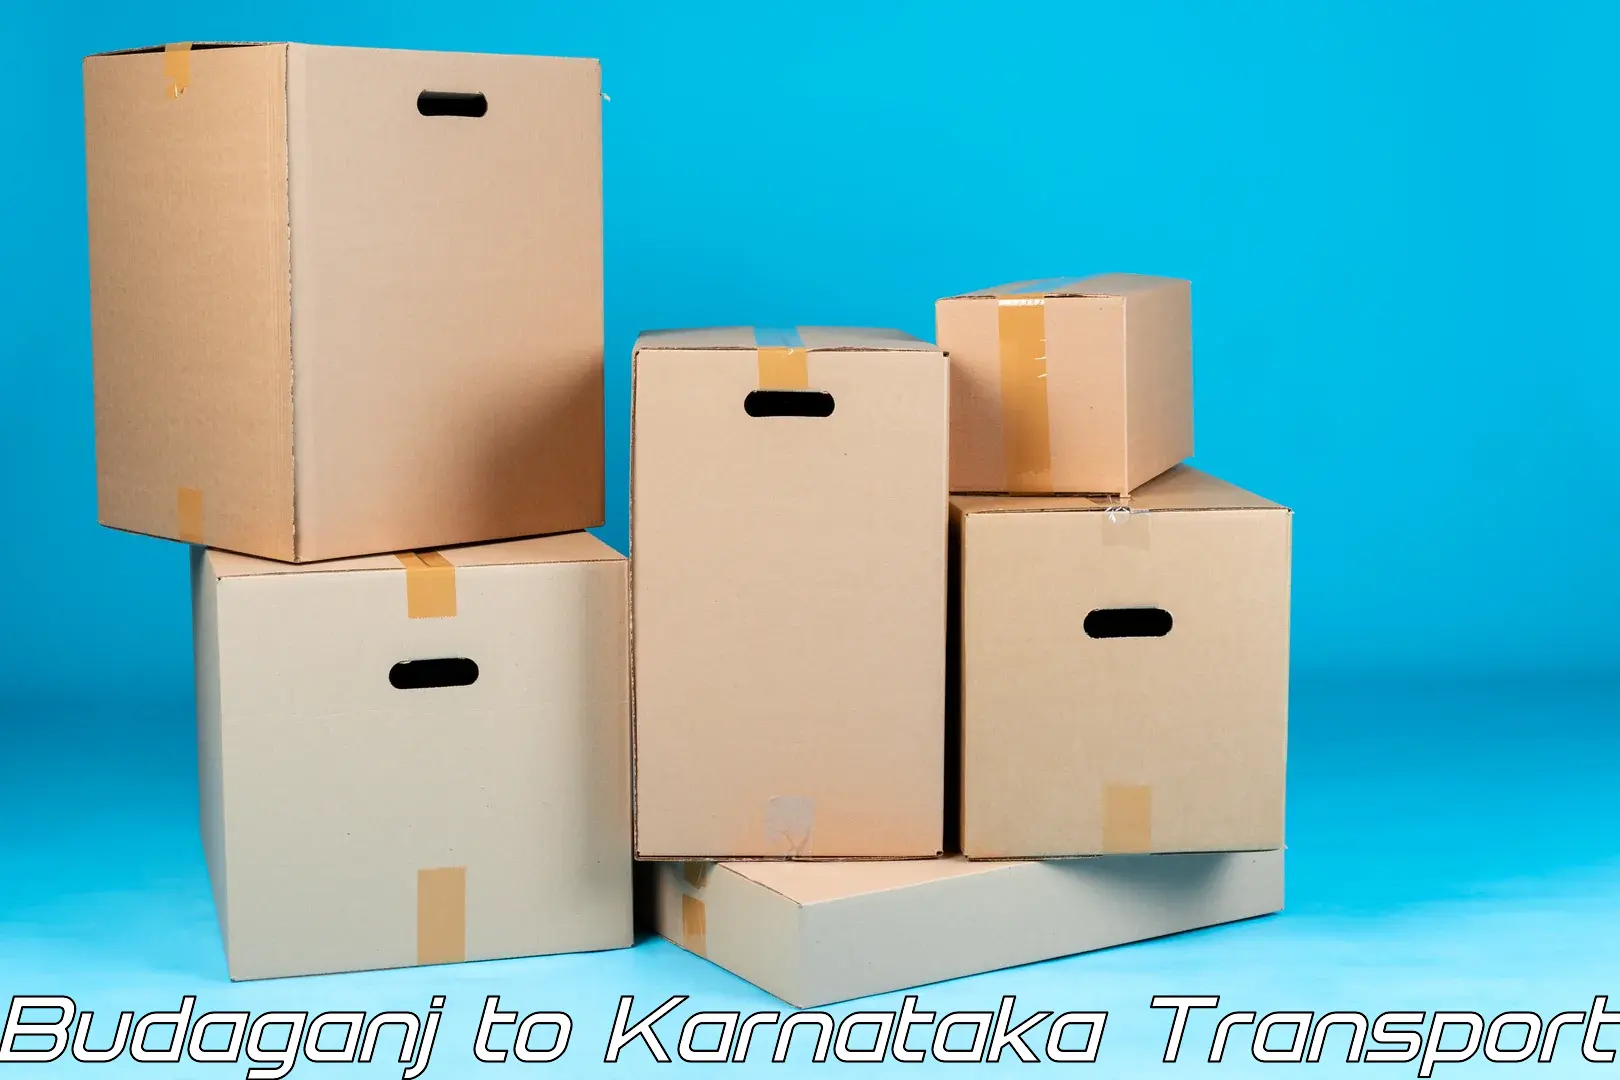 Part load transport service in India Budaganj to Karnataka